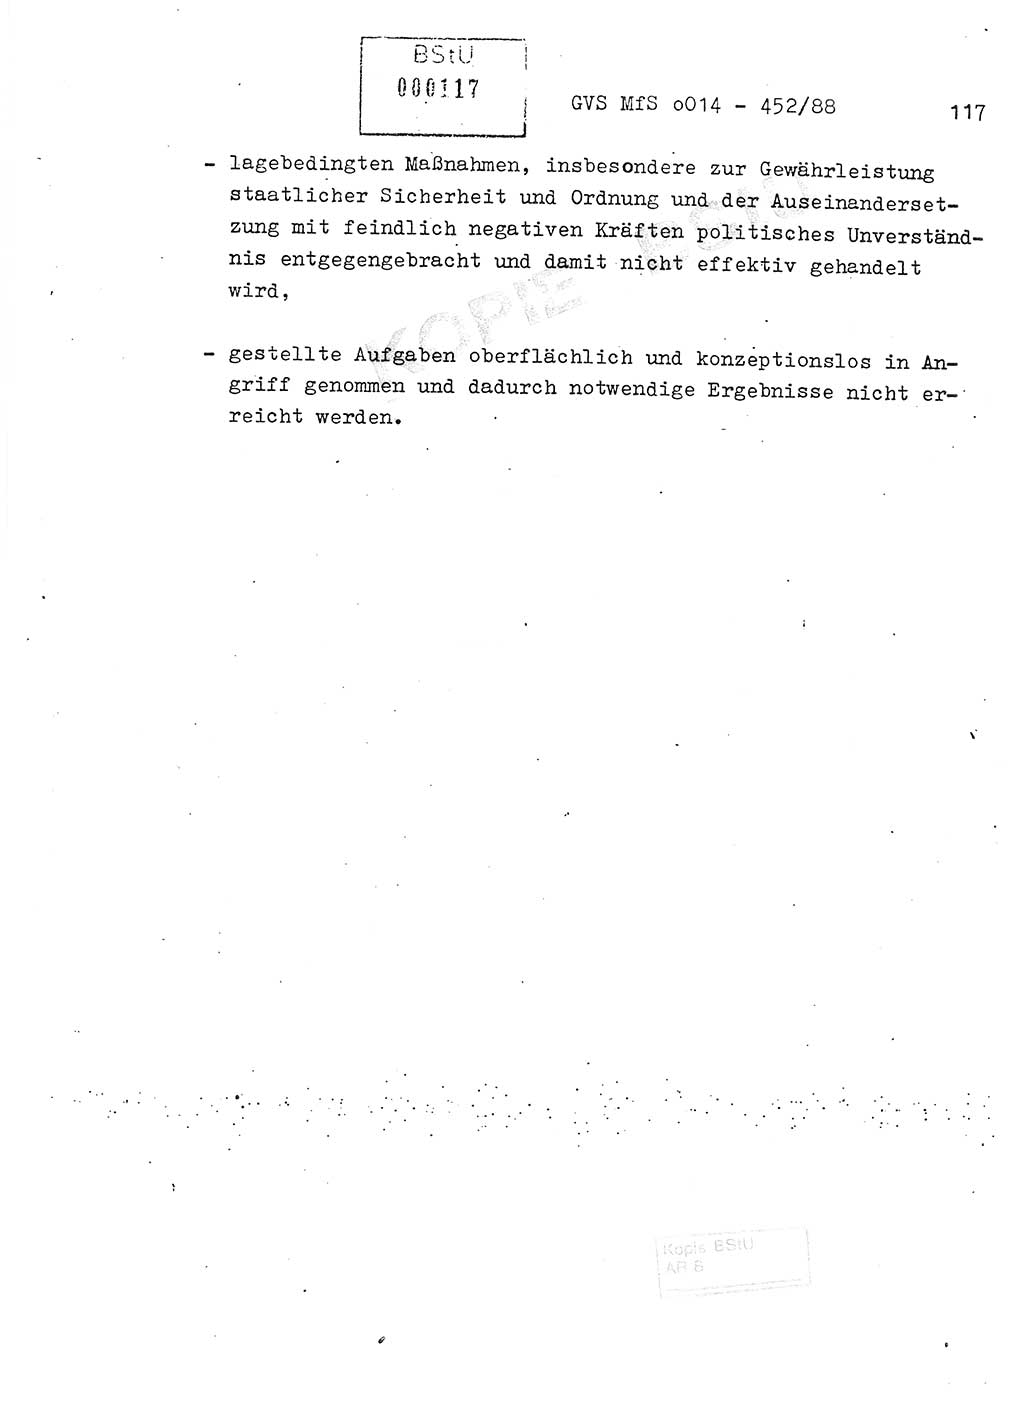 Jahresbericht der Hauptabteilung (HA) Ⅸ 1987, Einschätzung der Wirksamkeit der Untersuchungsarbeit im Jahre 1987, Ministerium für Staatssicherheit (MfS) der Deutschen Demokratischen Republik (DDR), Hauptabteilung Ⅸ, Geheime Verschlußsache (GVS) o014-452/88, Berlin 1988, Seite 117 (Einsch. MfS DDR HA Ⅸ GVS o014-452/88 1987, S. 117)